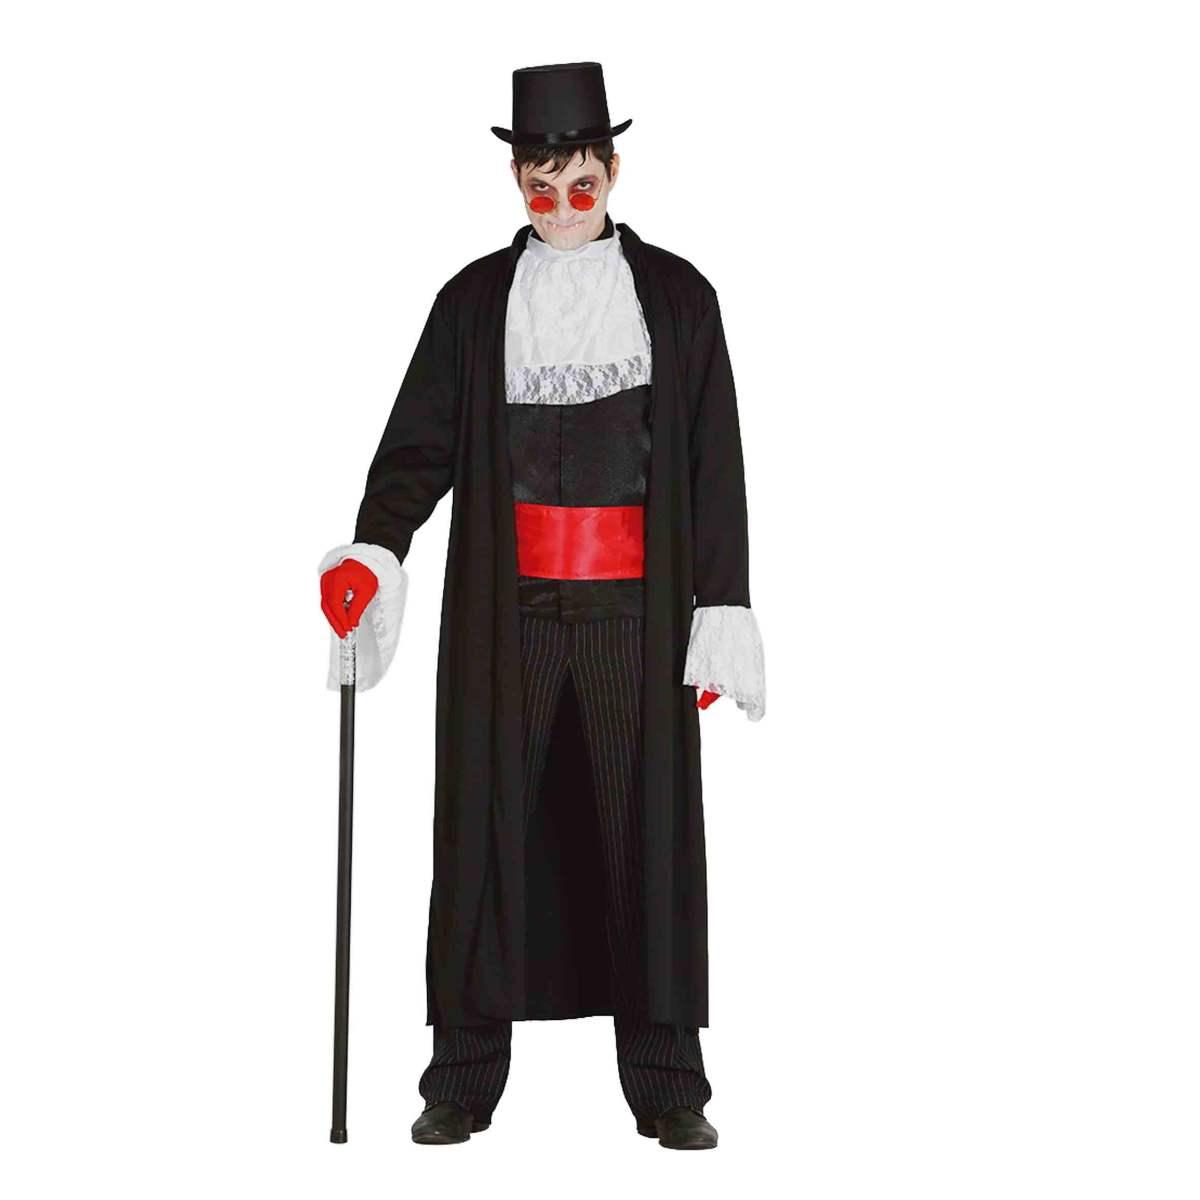 Costume Vampiro Conte Dracula: Acquista Online per un Epico Carnevale